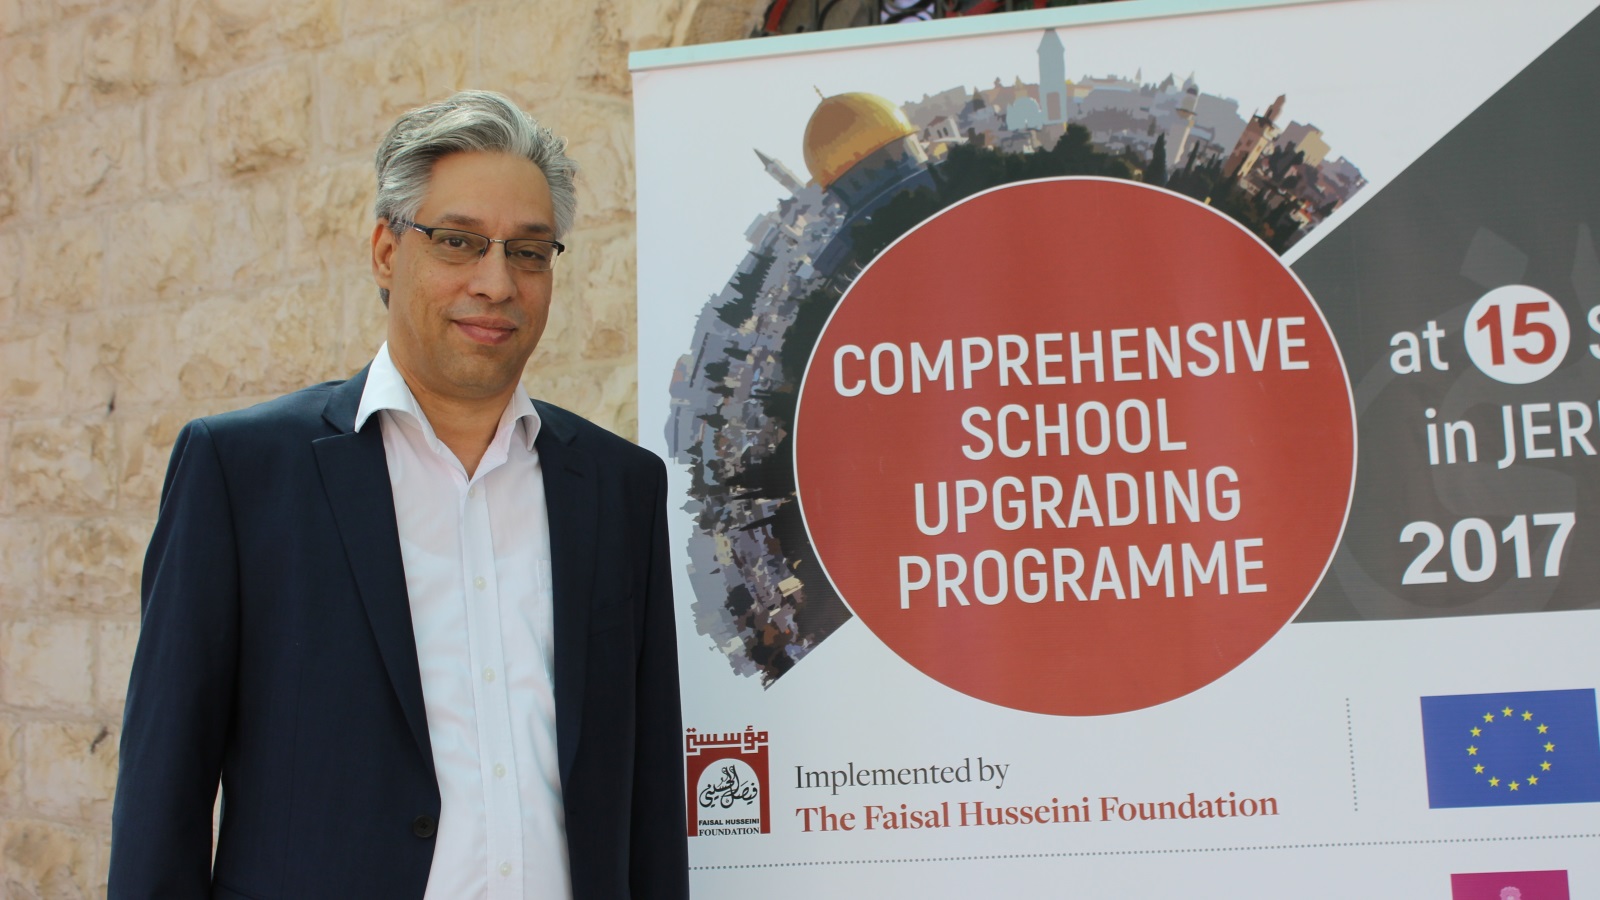 عبد القادر الحسيني: المشروع يهدف إلى فتح حوارات حول قيم الديمقراطية وحقوق الطفل والتعليم الجامع (الجزيرة)